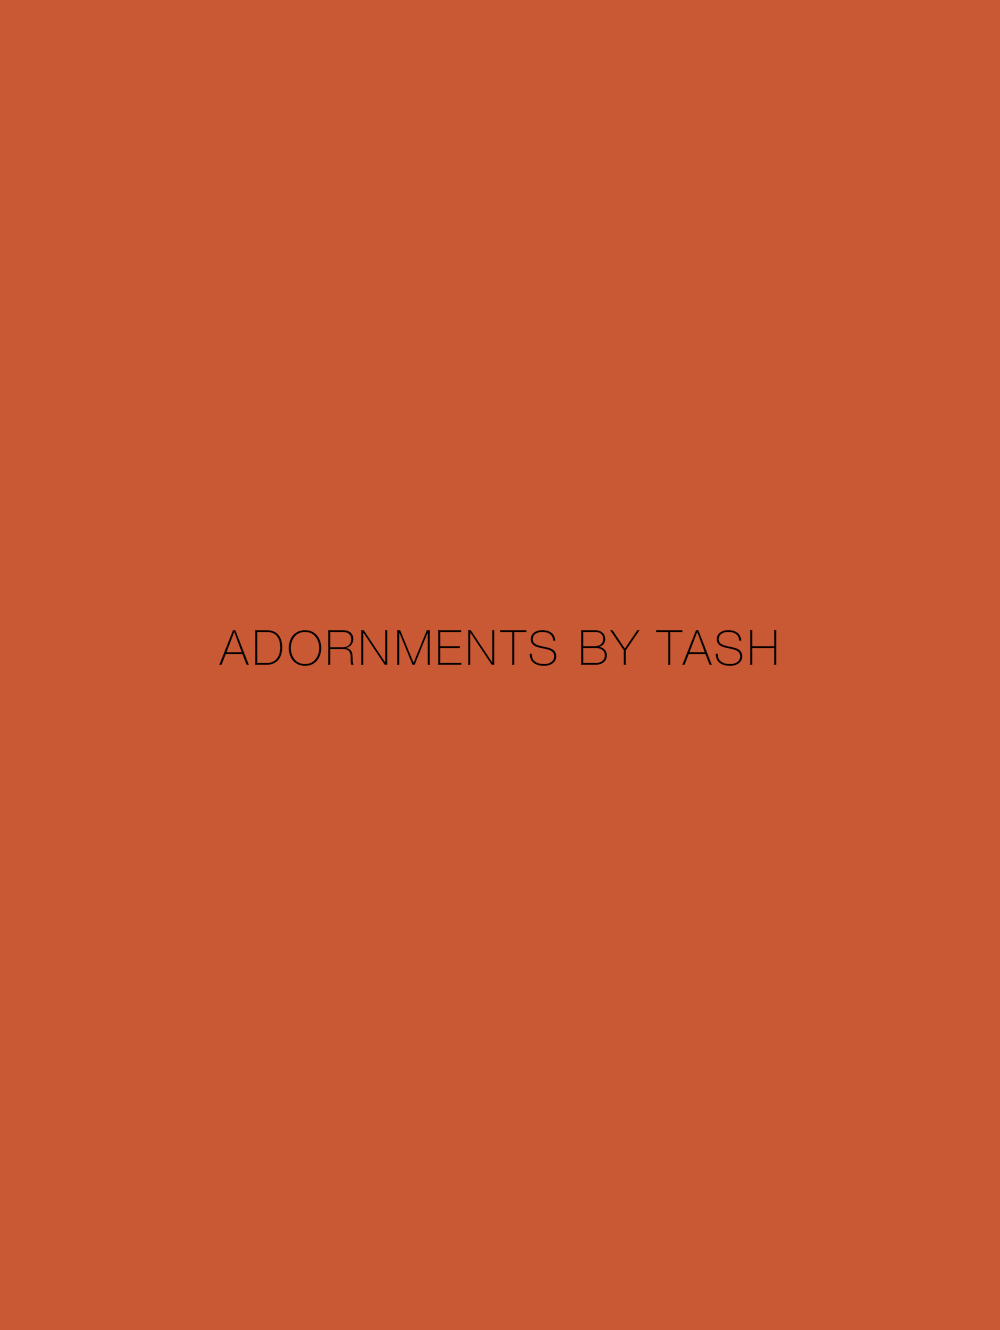 Adornments by tashi